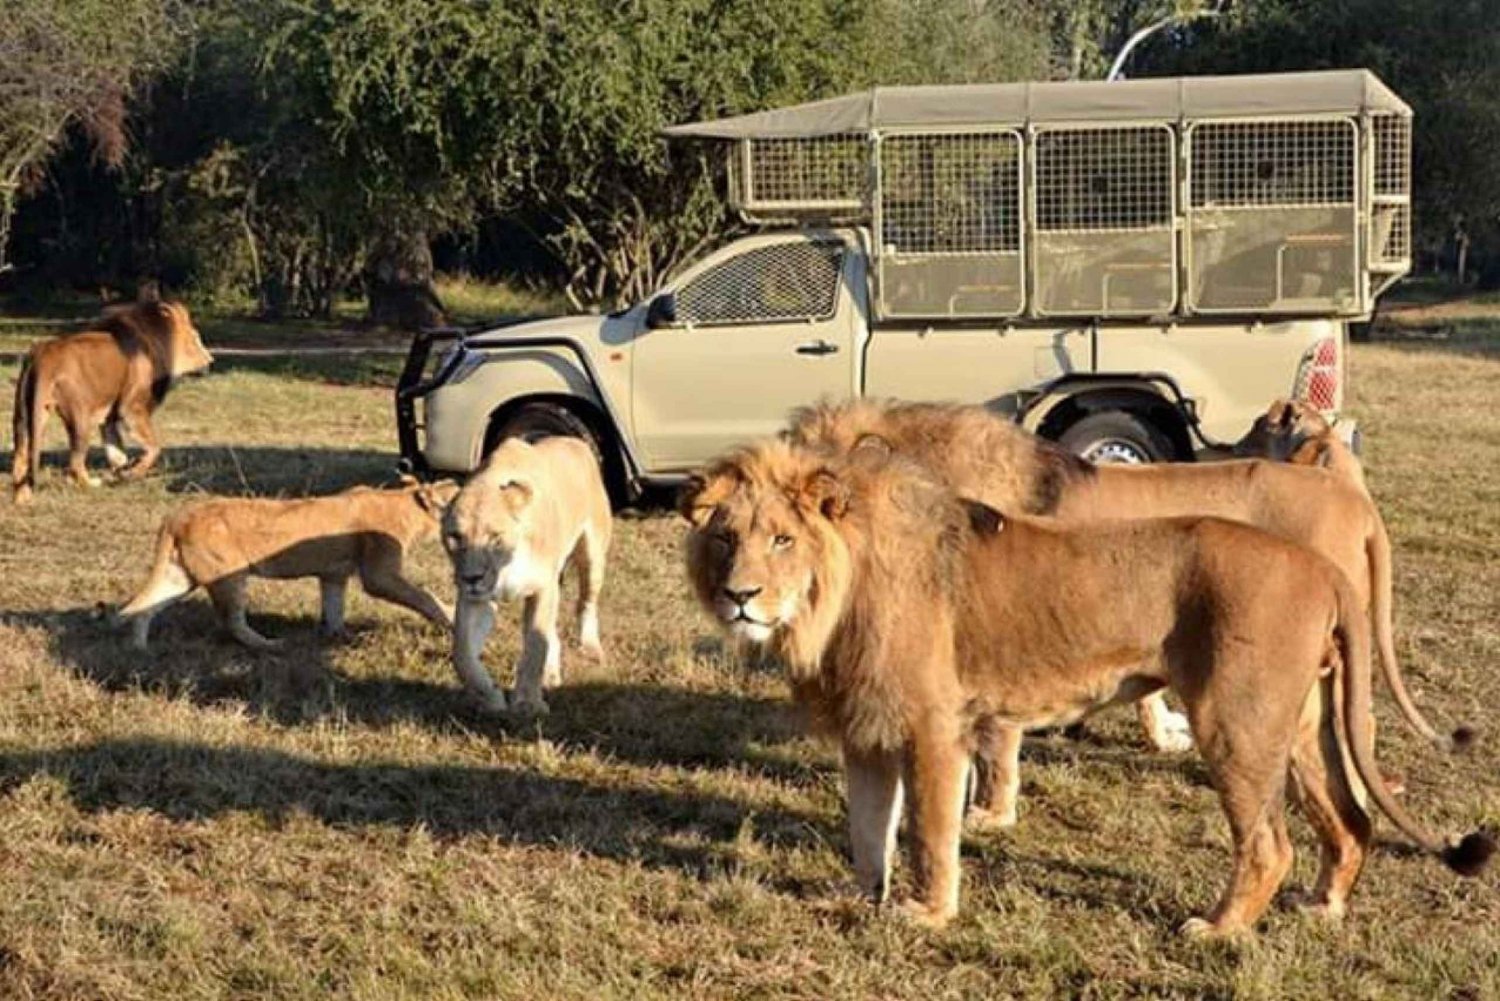 Löwen- und Safaripark: Pirschfahrt im offenen Fahrzeug